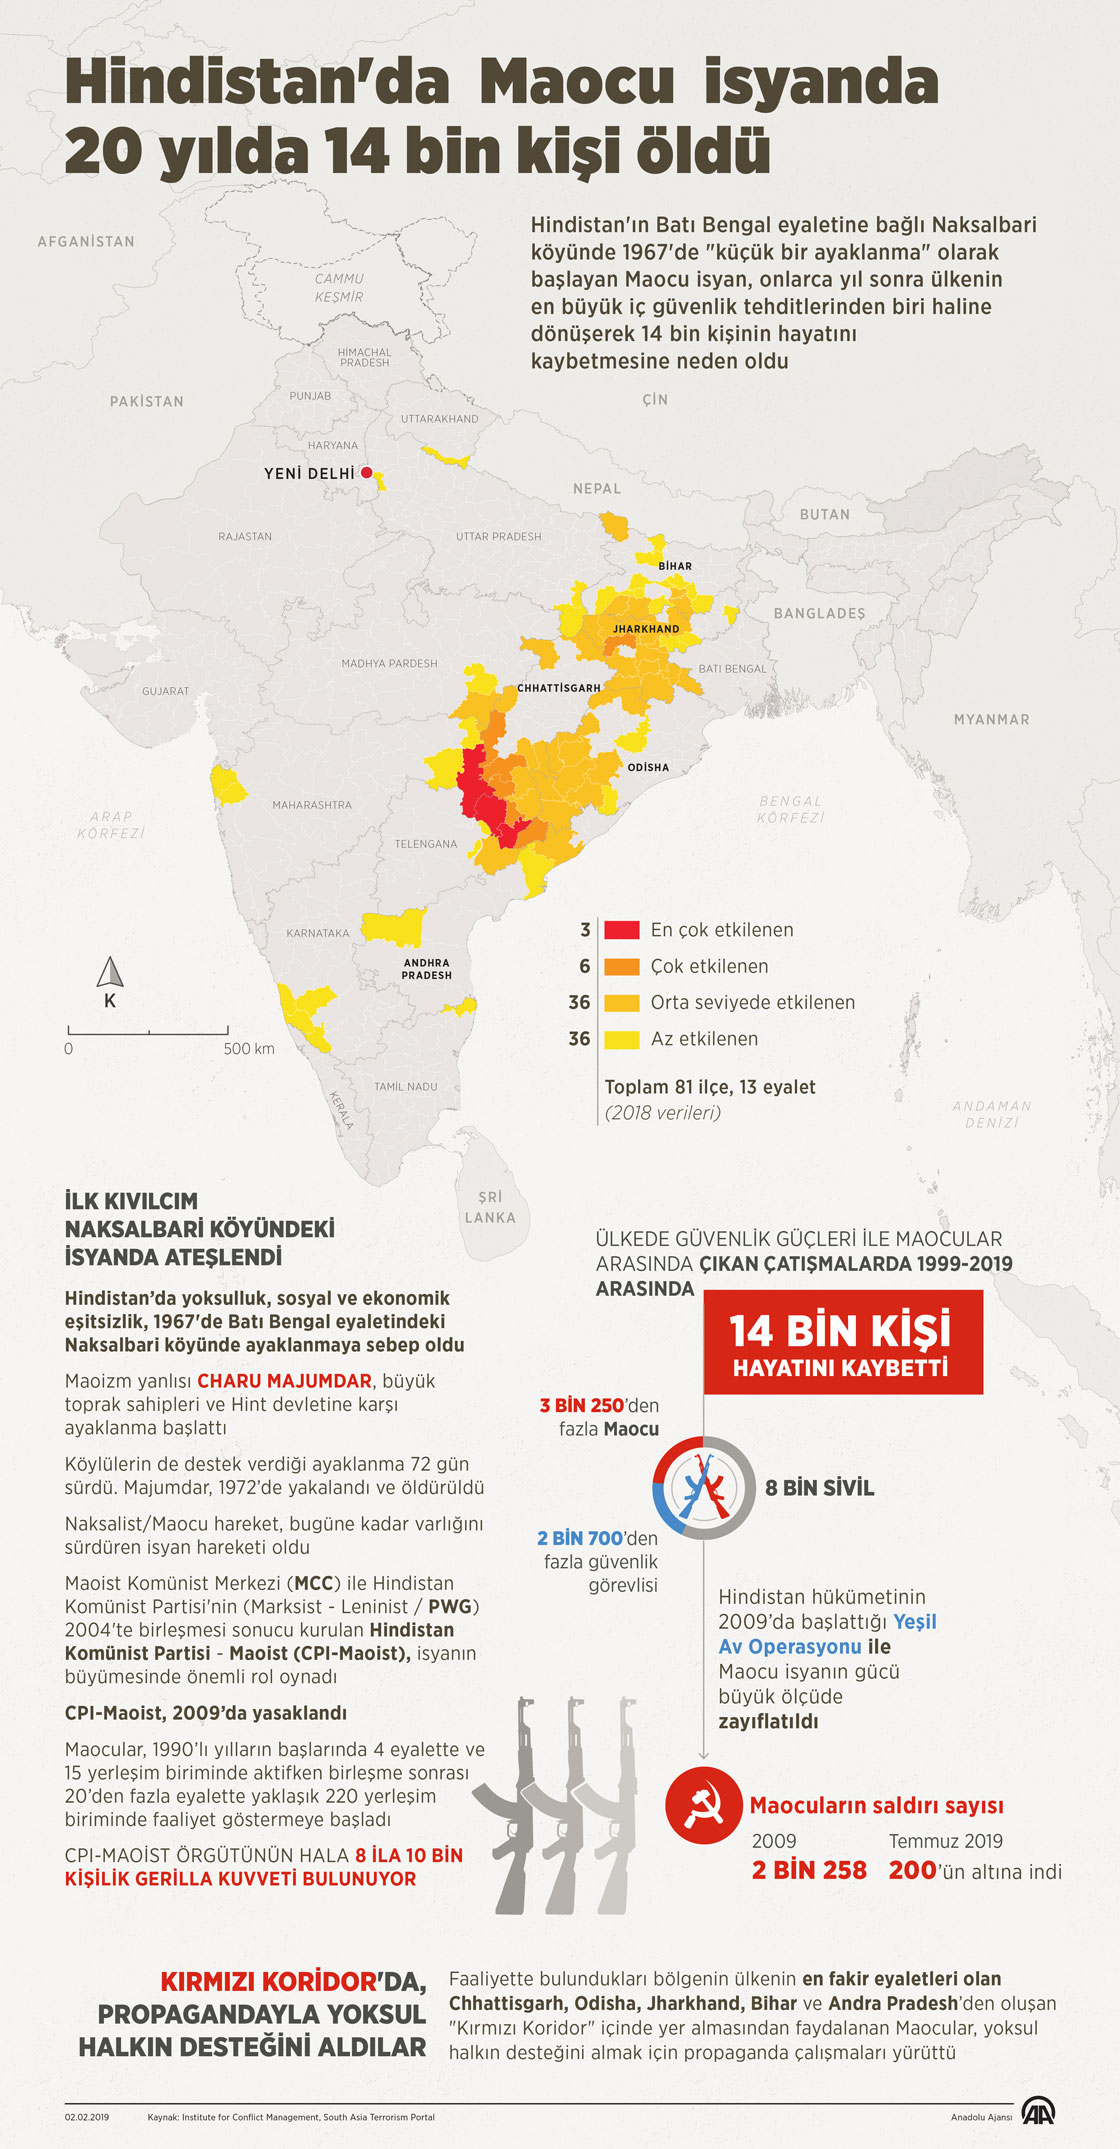 Hindistan'da Maocu isyanda 20 yılda 14 bin kişi öldü